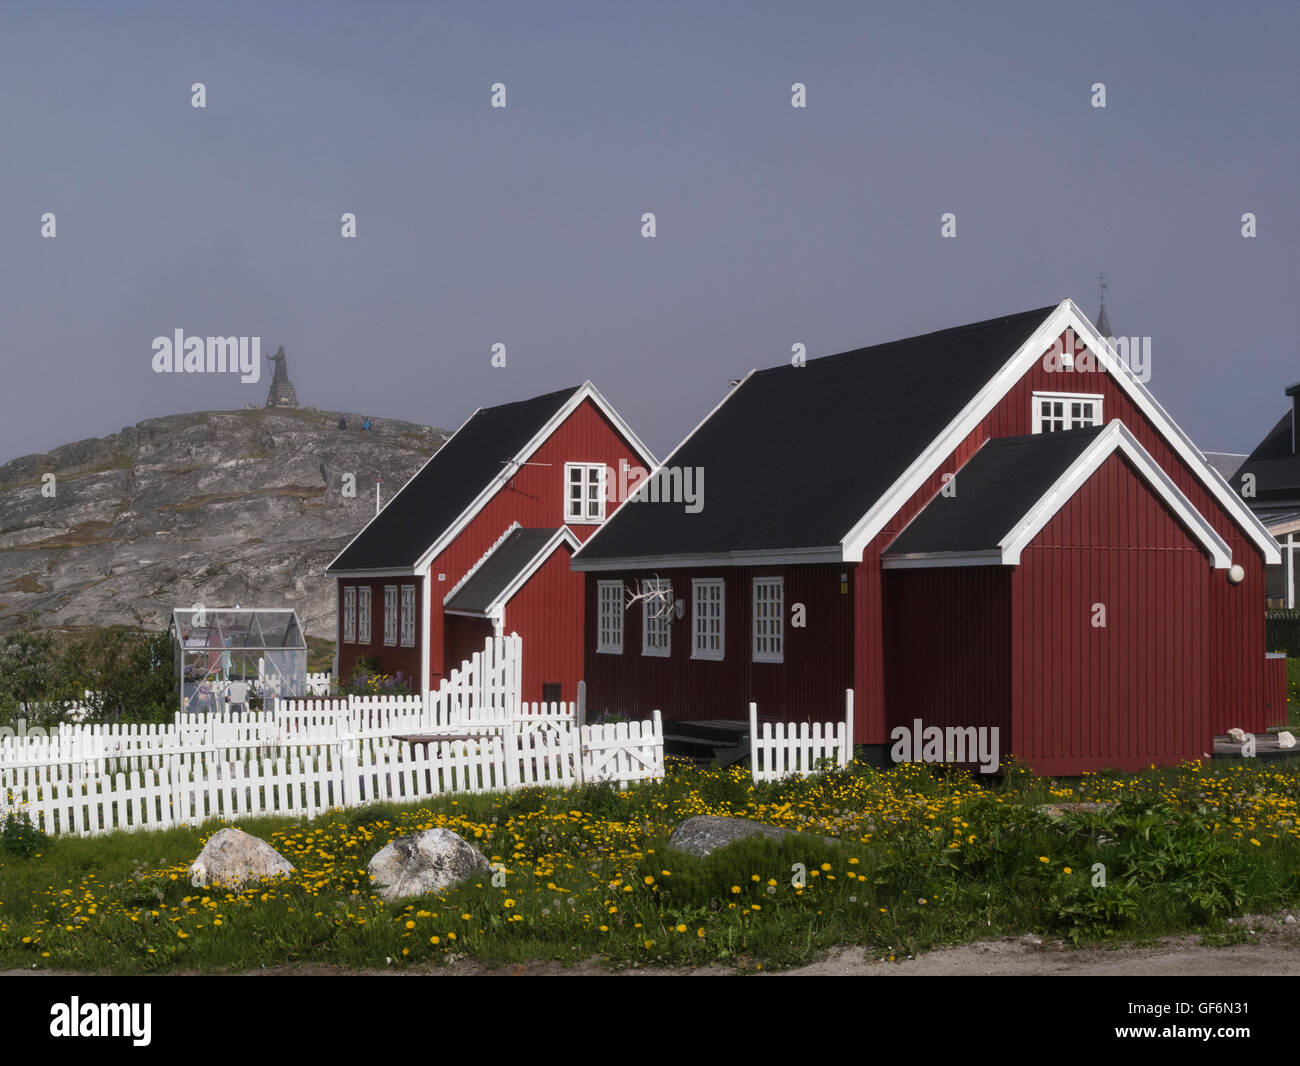 Maisons en bois peint rouge blanc avec jardins clôturés de piquetage avec les émissions de capitale du Groenland Nuuk vue de Hans Egede statue sur la colline en arrière-plan Banque D'Images